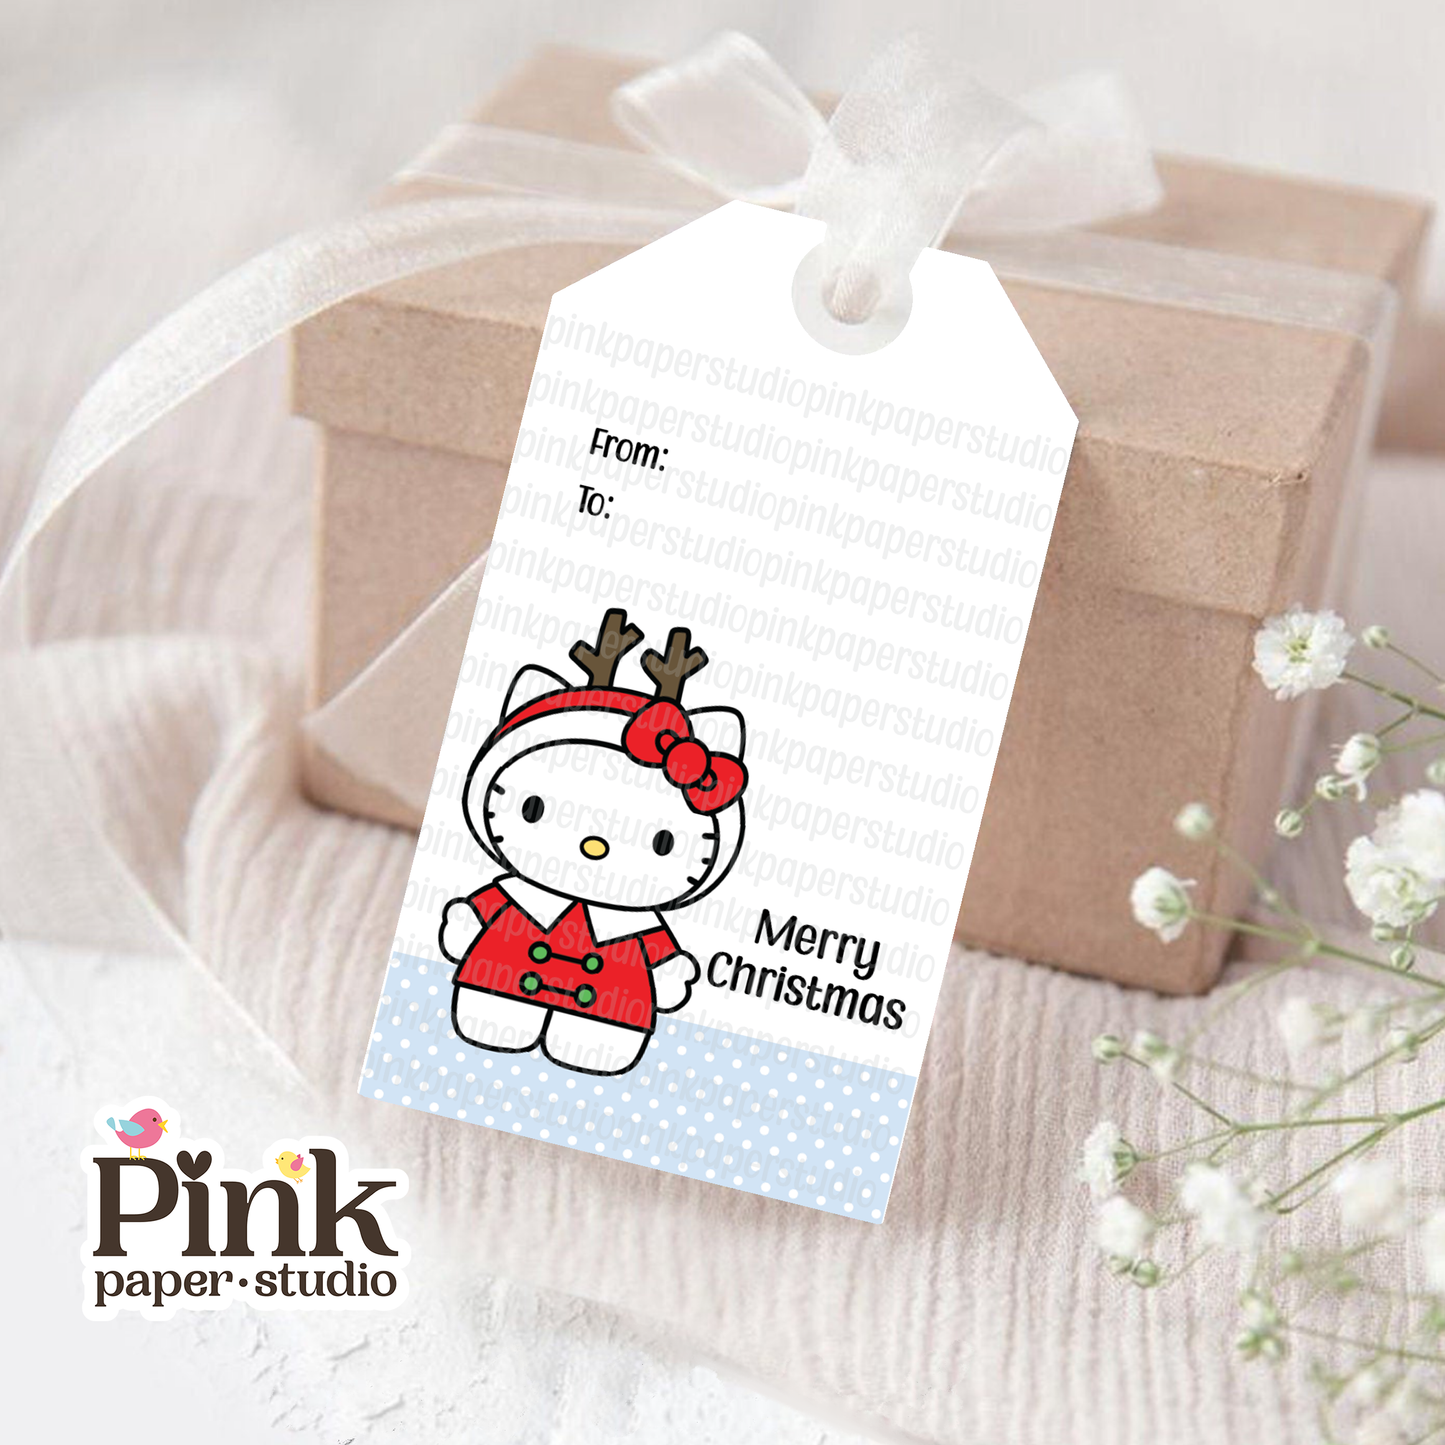 Hello Kitty Christmas Tags • Set of 9 Tags